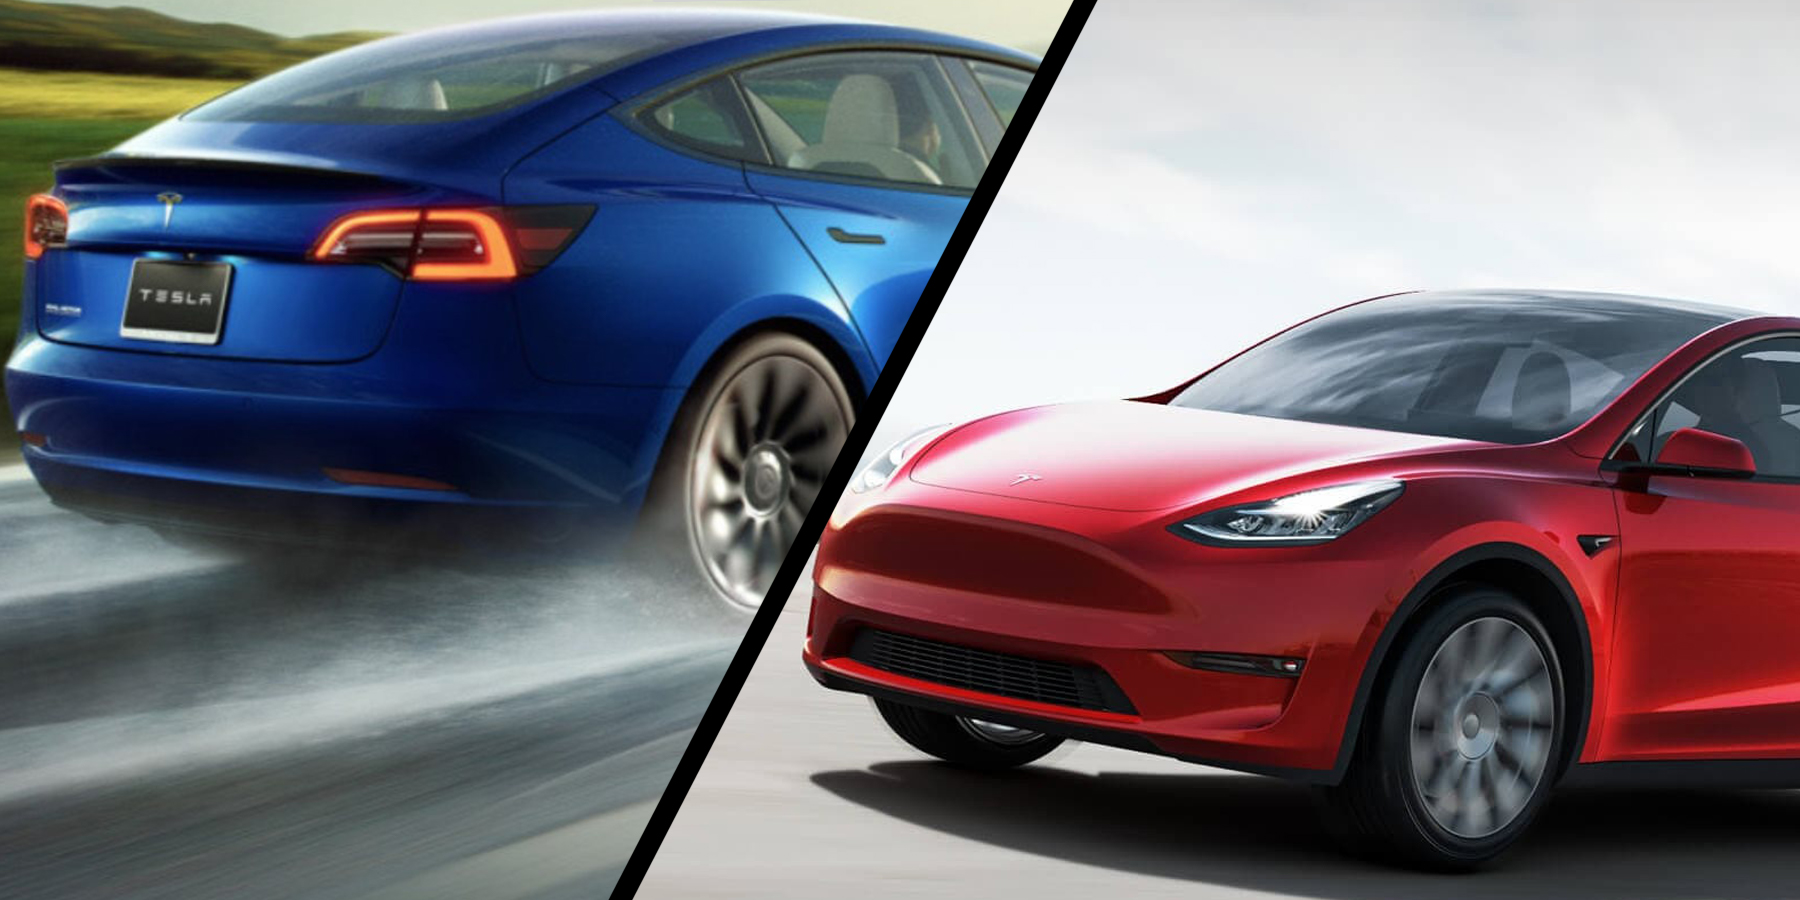 New Tesla Model 3 vs. Old Tesla Model 3: All the Changes Side-By-Side